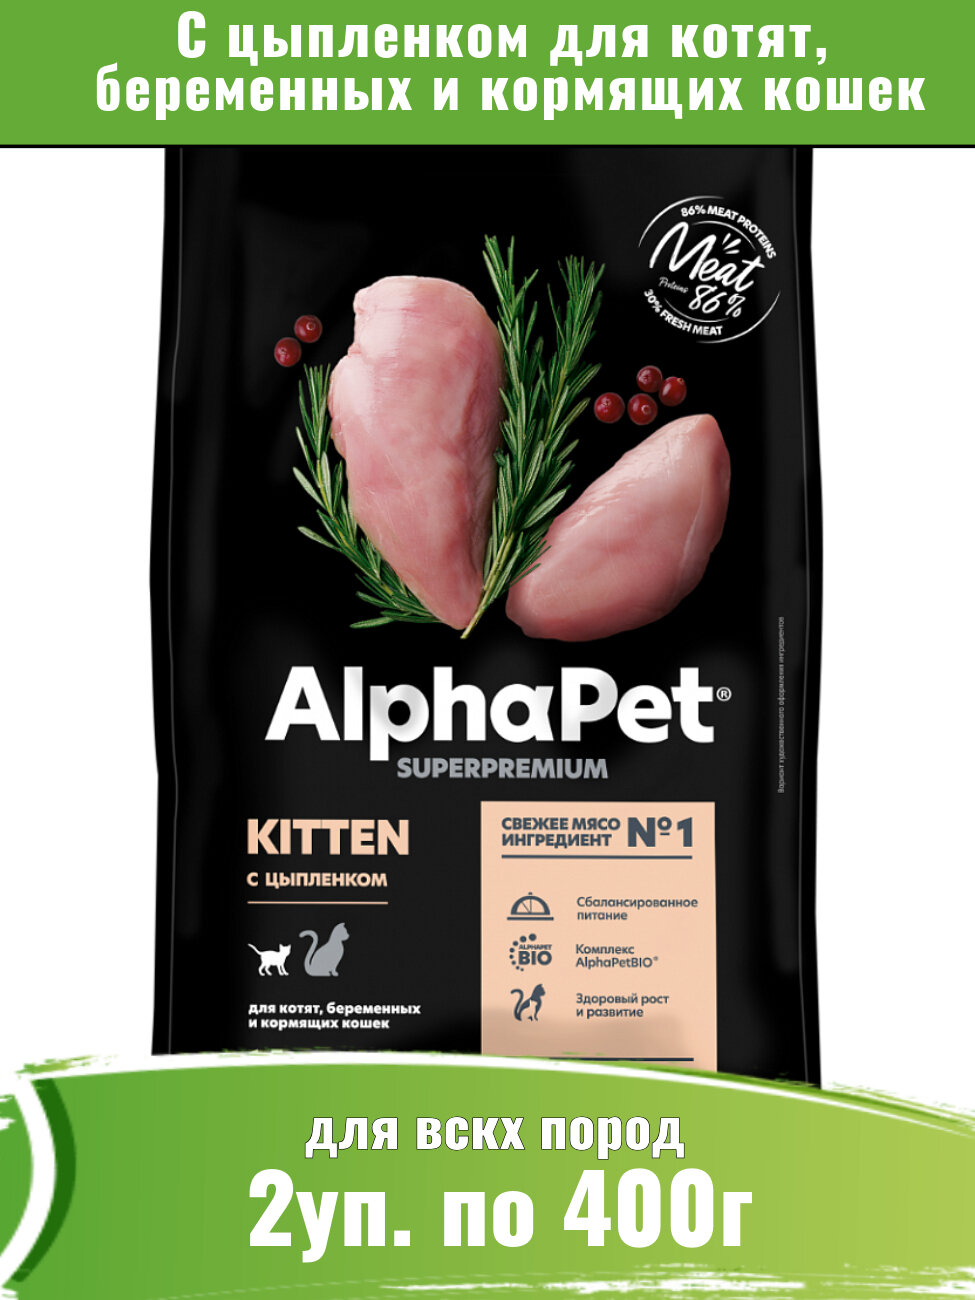 AlphaPet Superpremium 2уп по 400г корм для котят, беременных и кормящих кошек, с цыпленком